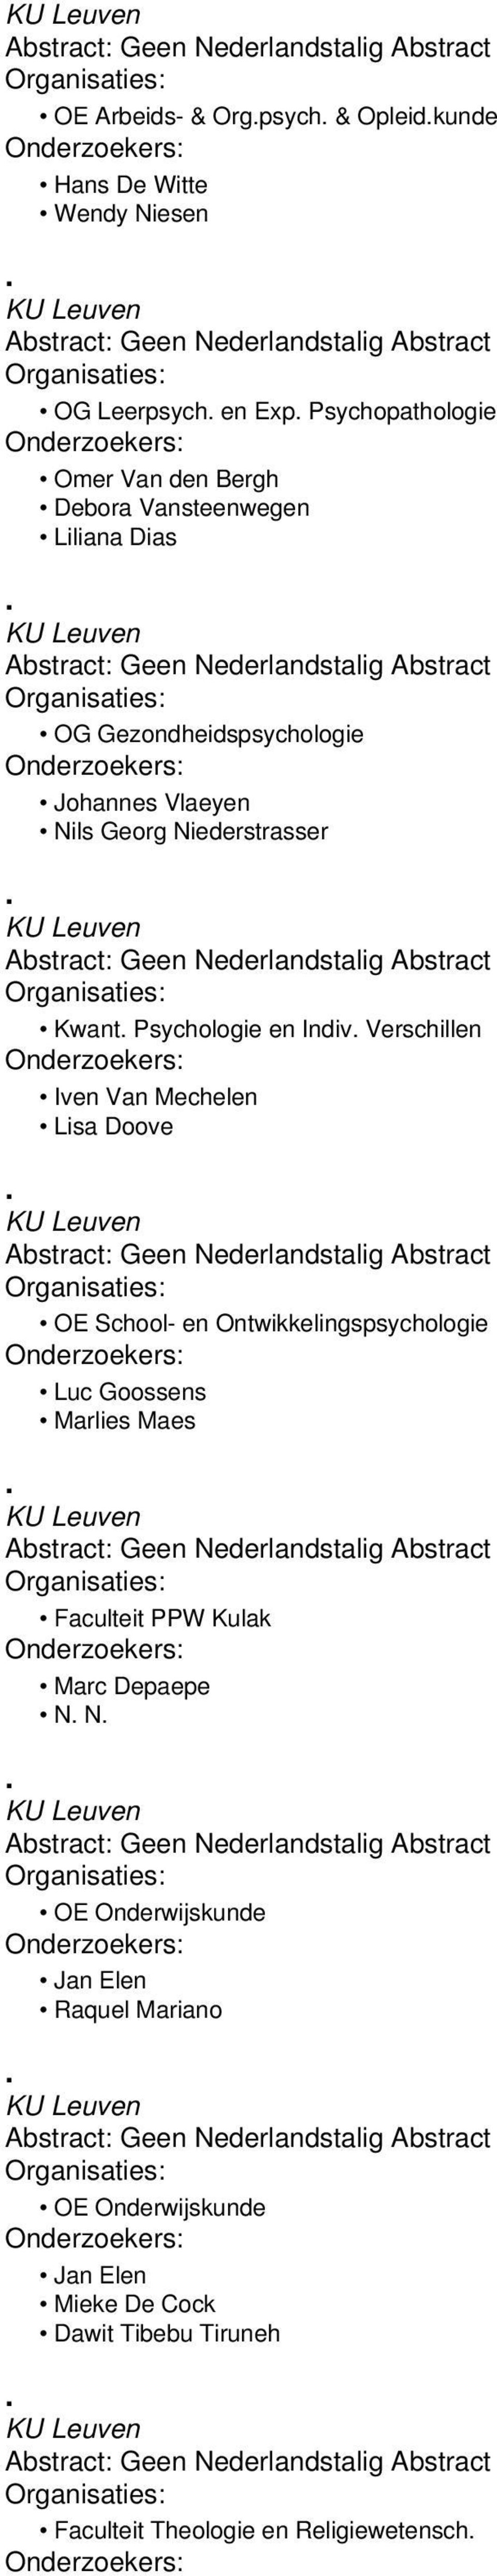 Verschillen Iven Van Mechelen Lisa Doove OE School- en Ontwikkelingspsychologie Luc Goossens Marlies Maes Faculteit PPW Kulak Marc